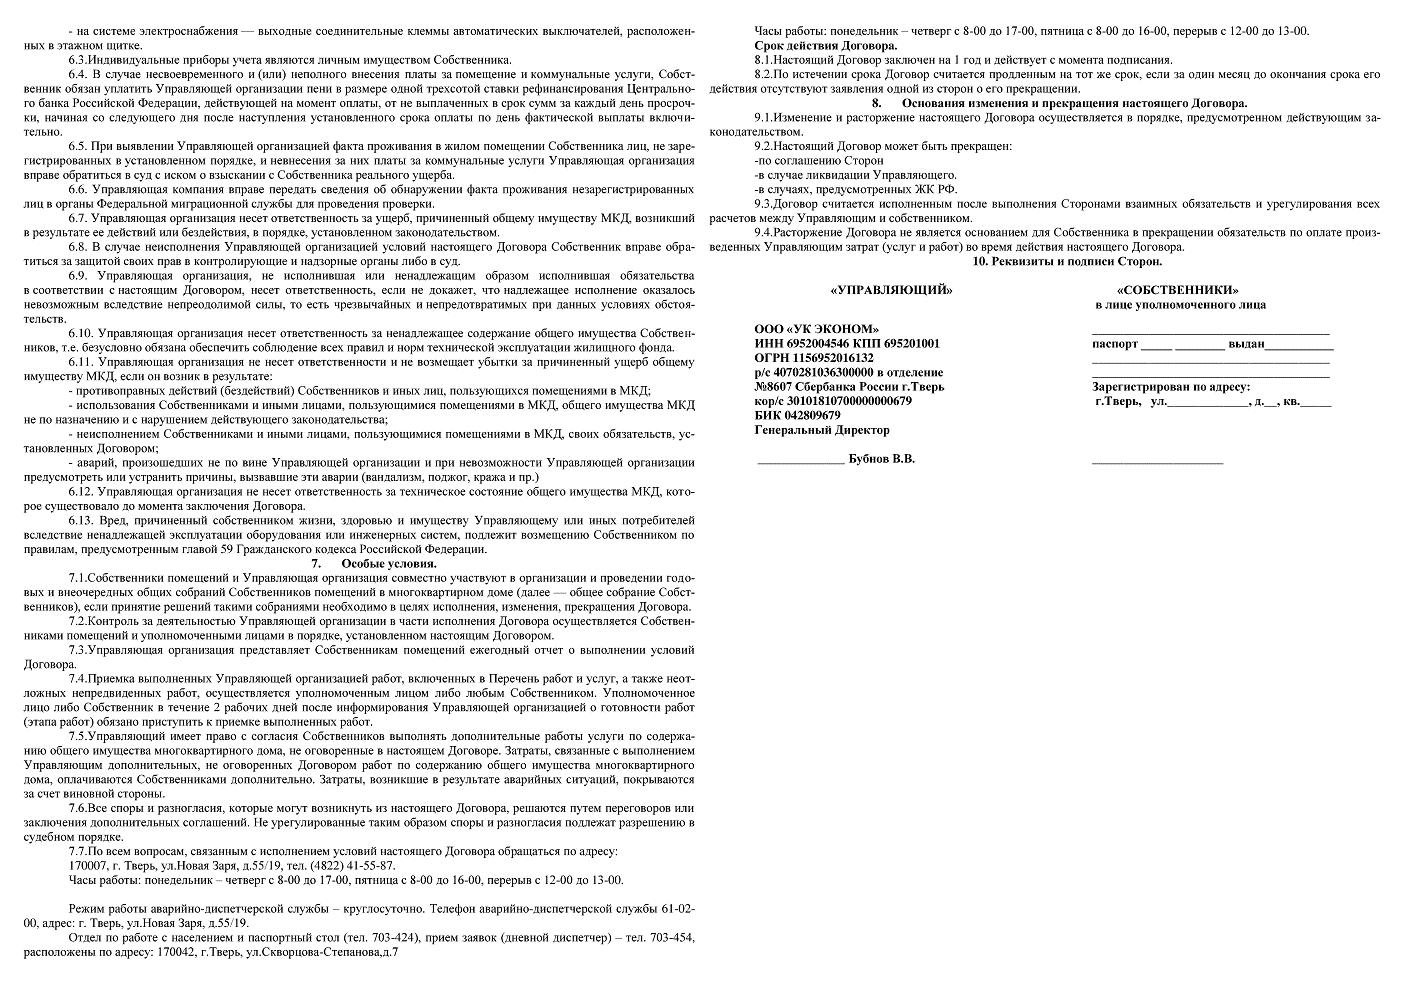 Договор управления москва. Отчет управляющей компании по управлению многоквартирным домом.